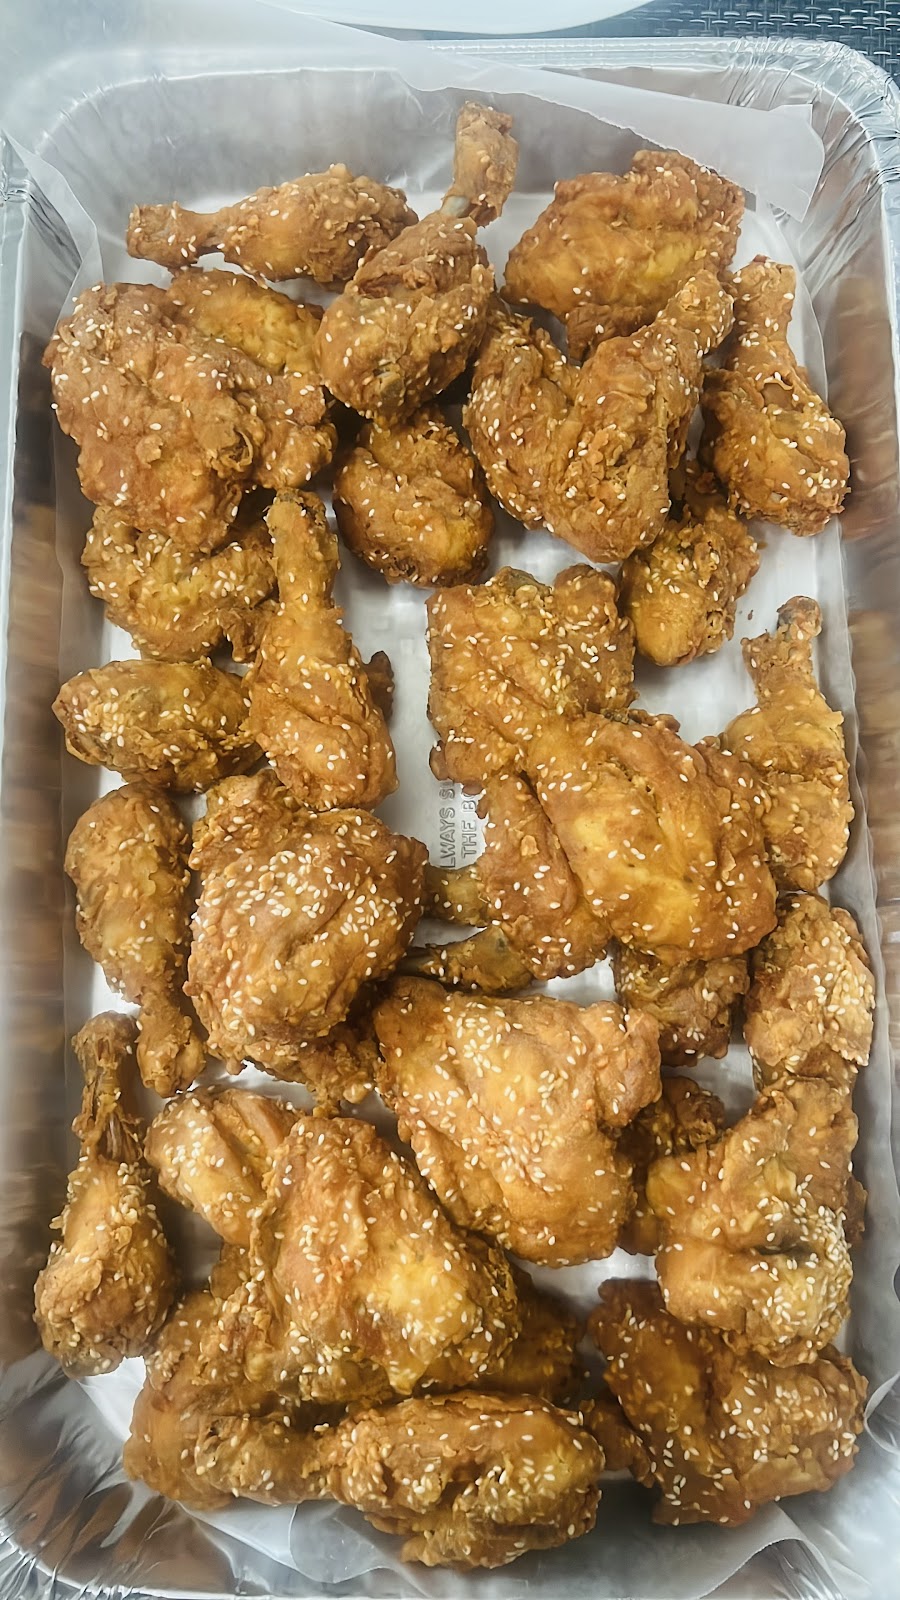 New Scotland Fried Chicken & Deli | 247 New Scotland Ave, Albany, NY 12208, USA | Phone: (518) 818-1001